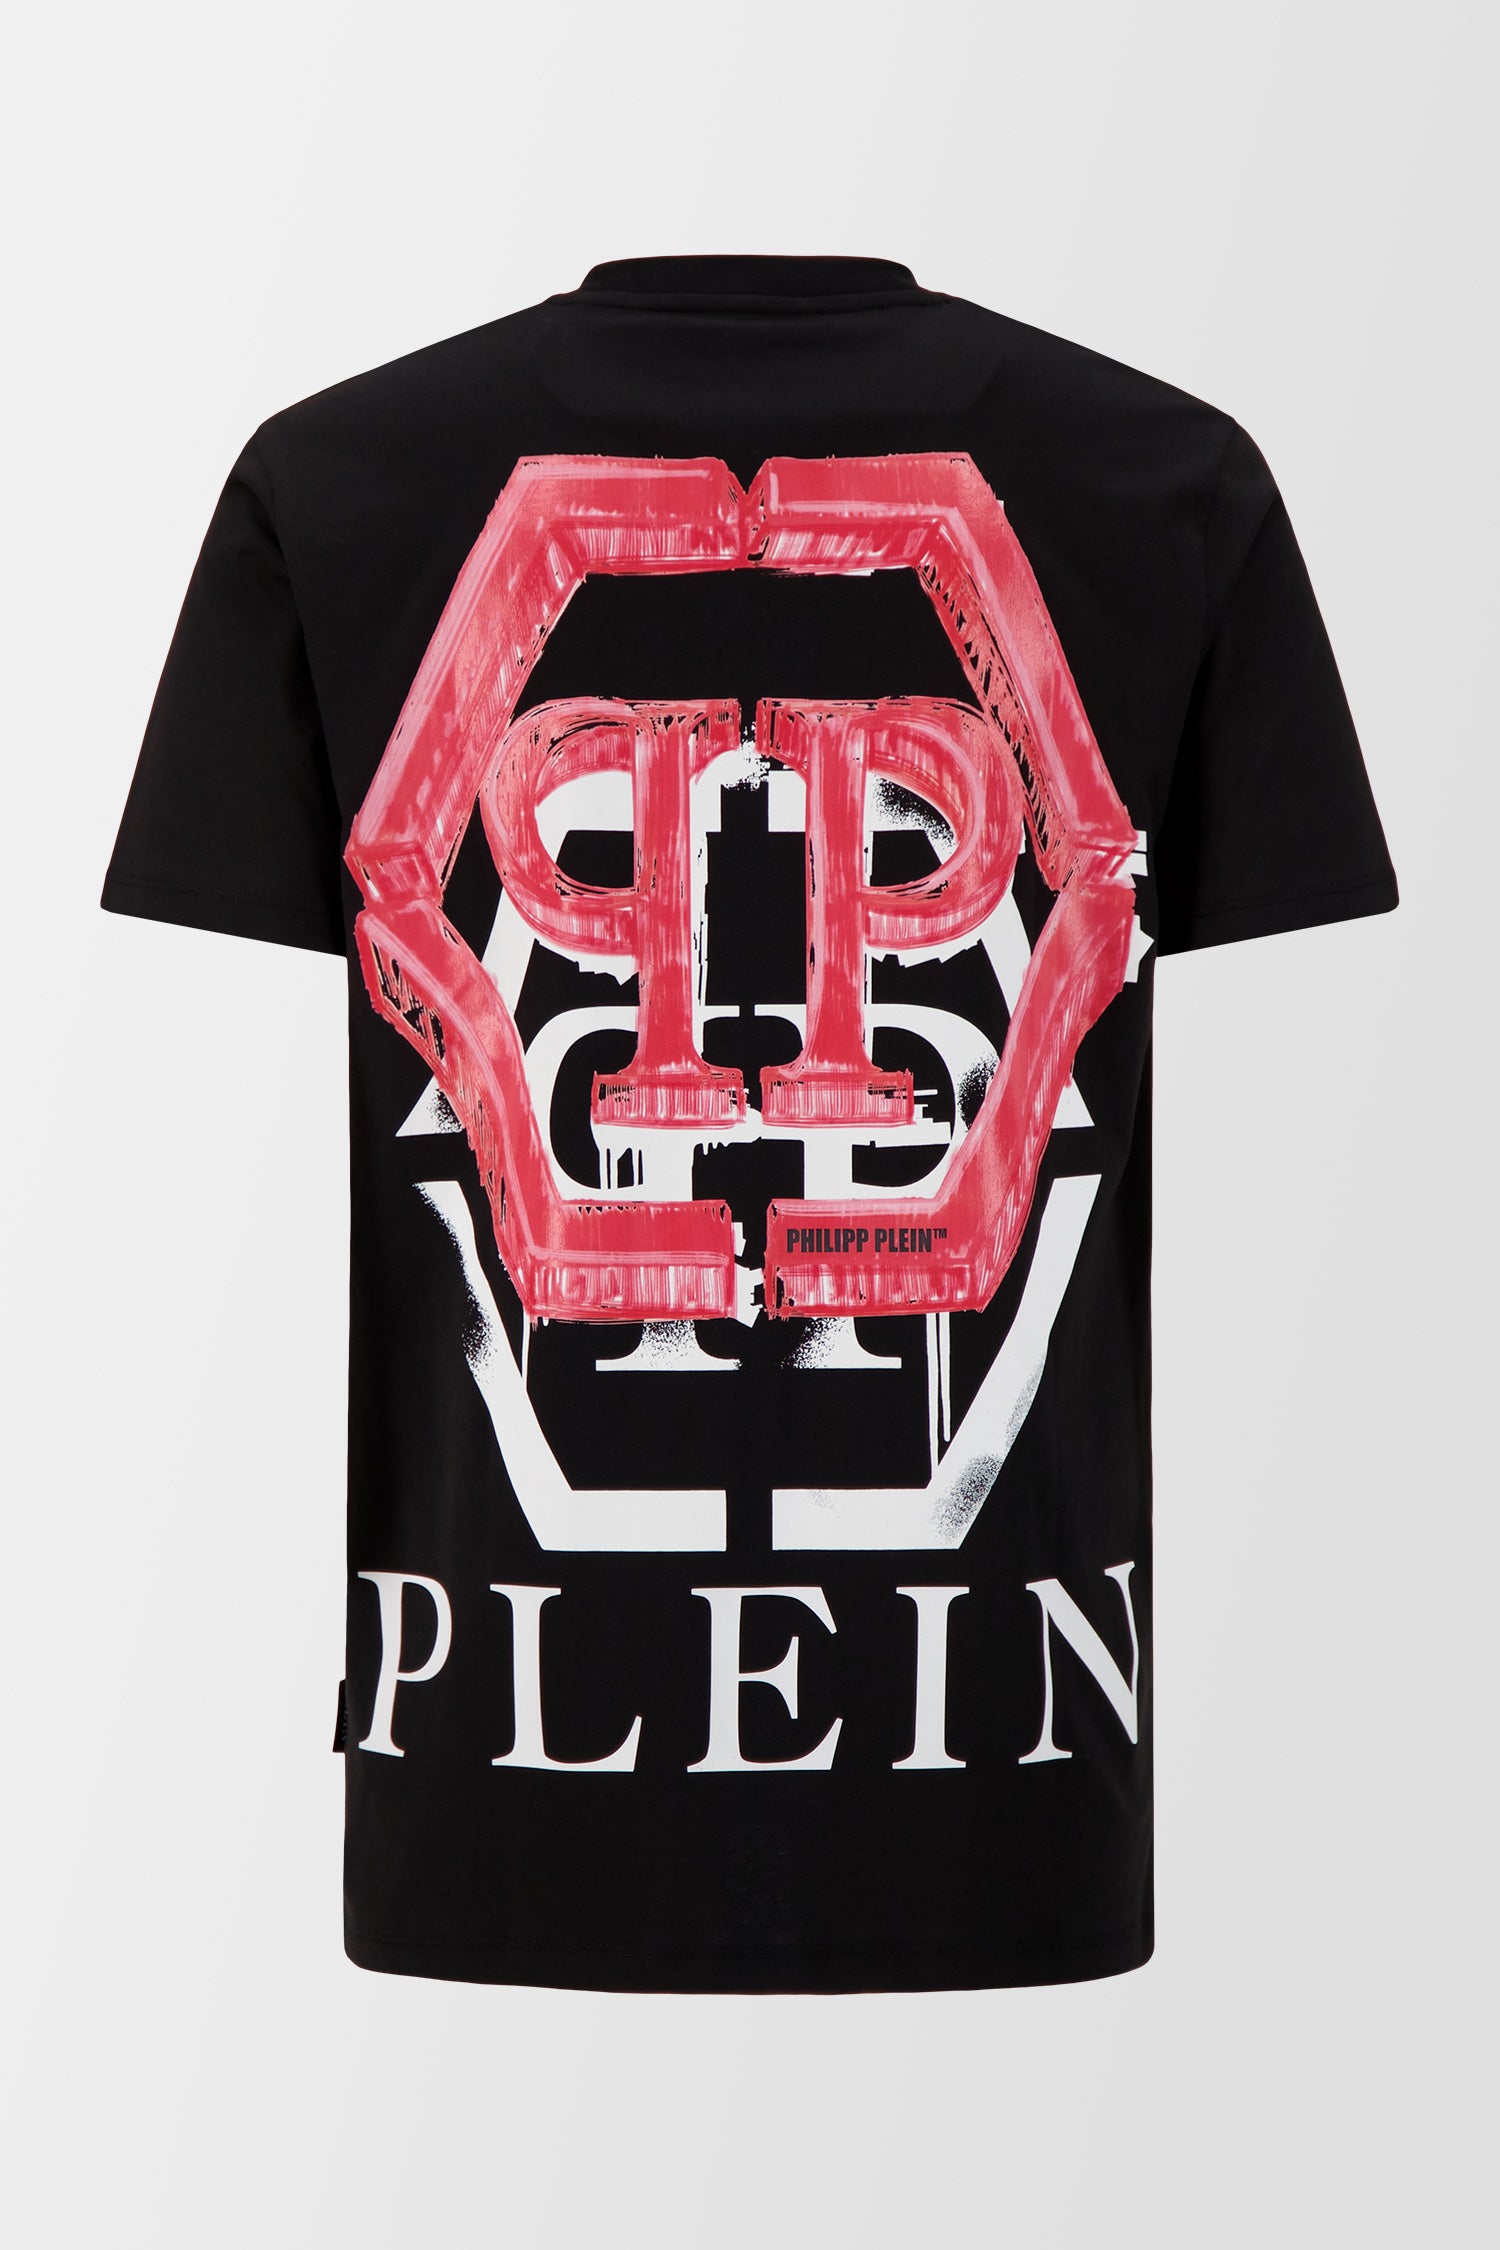 Philipp Plein Black Round Neck SS Hexagon T-Shirt